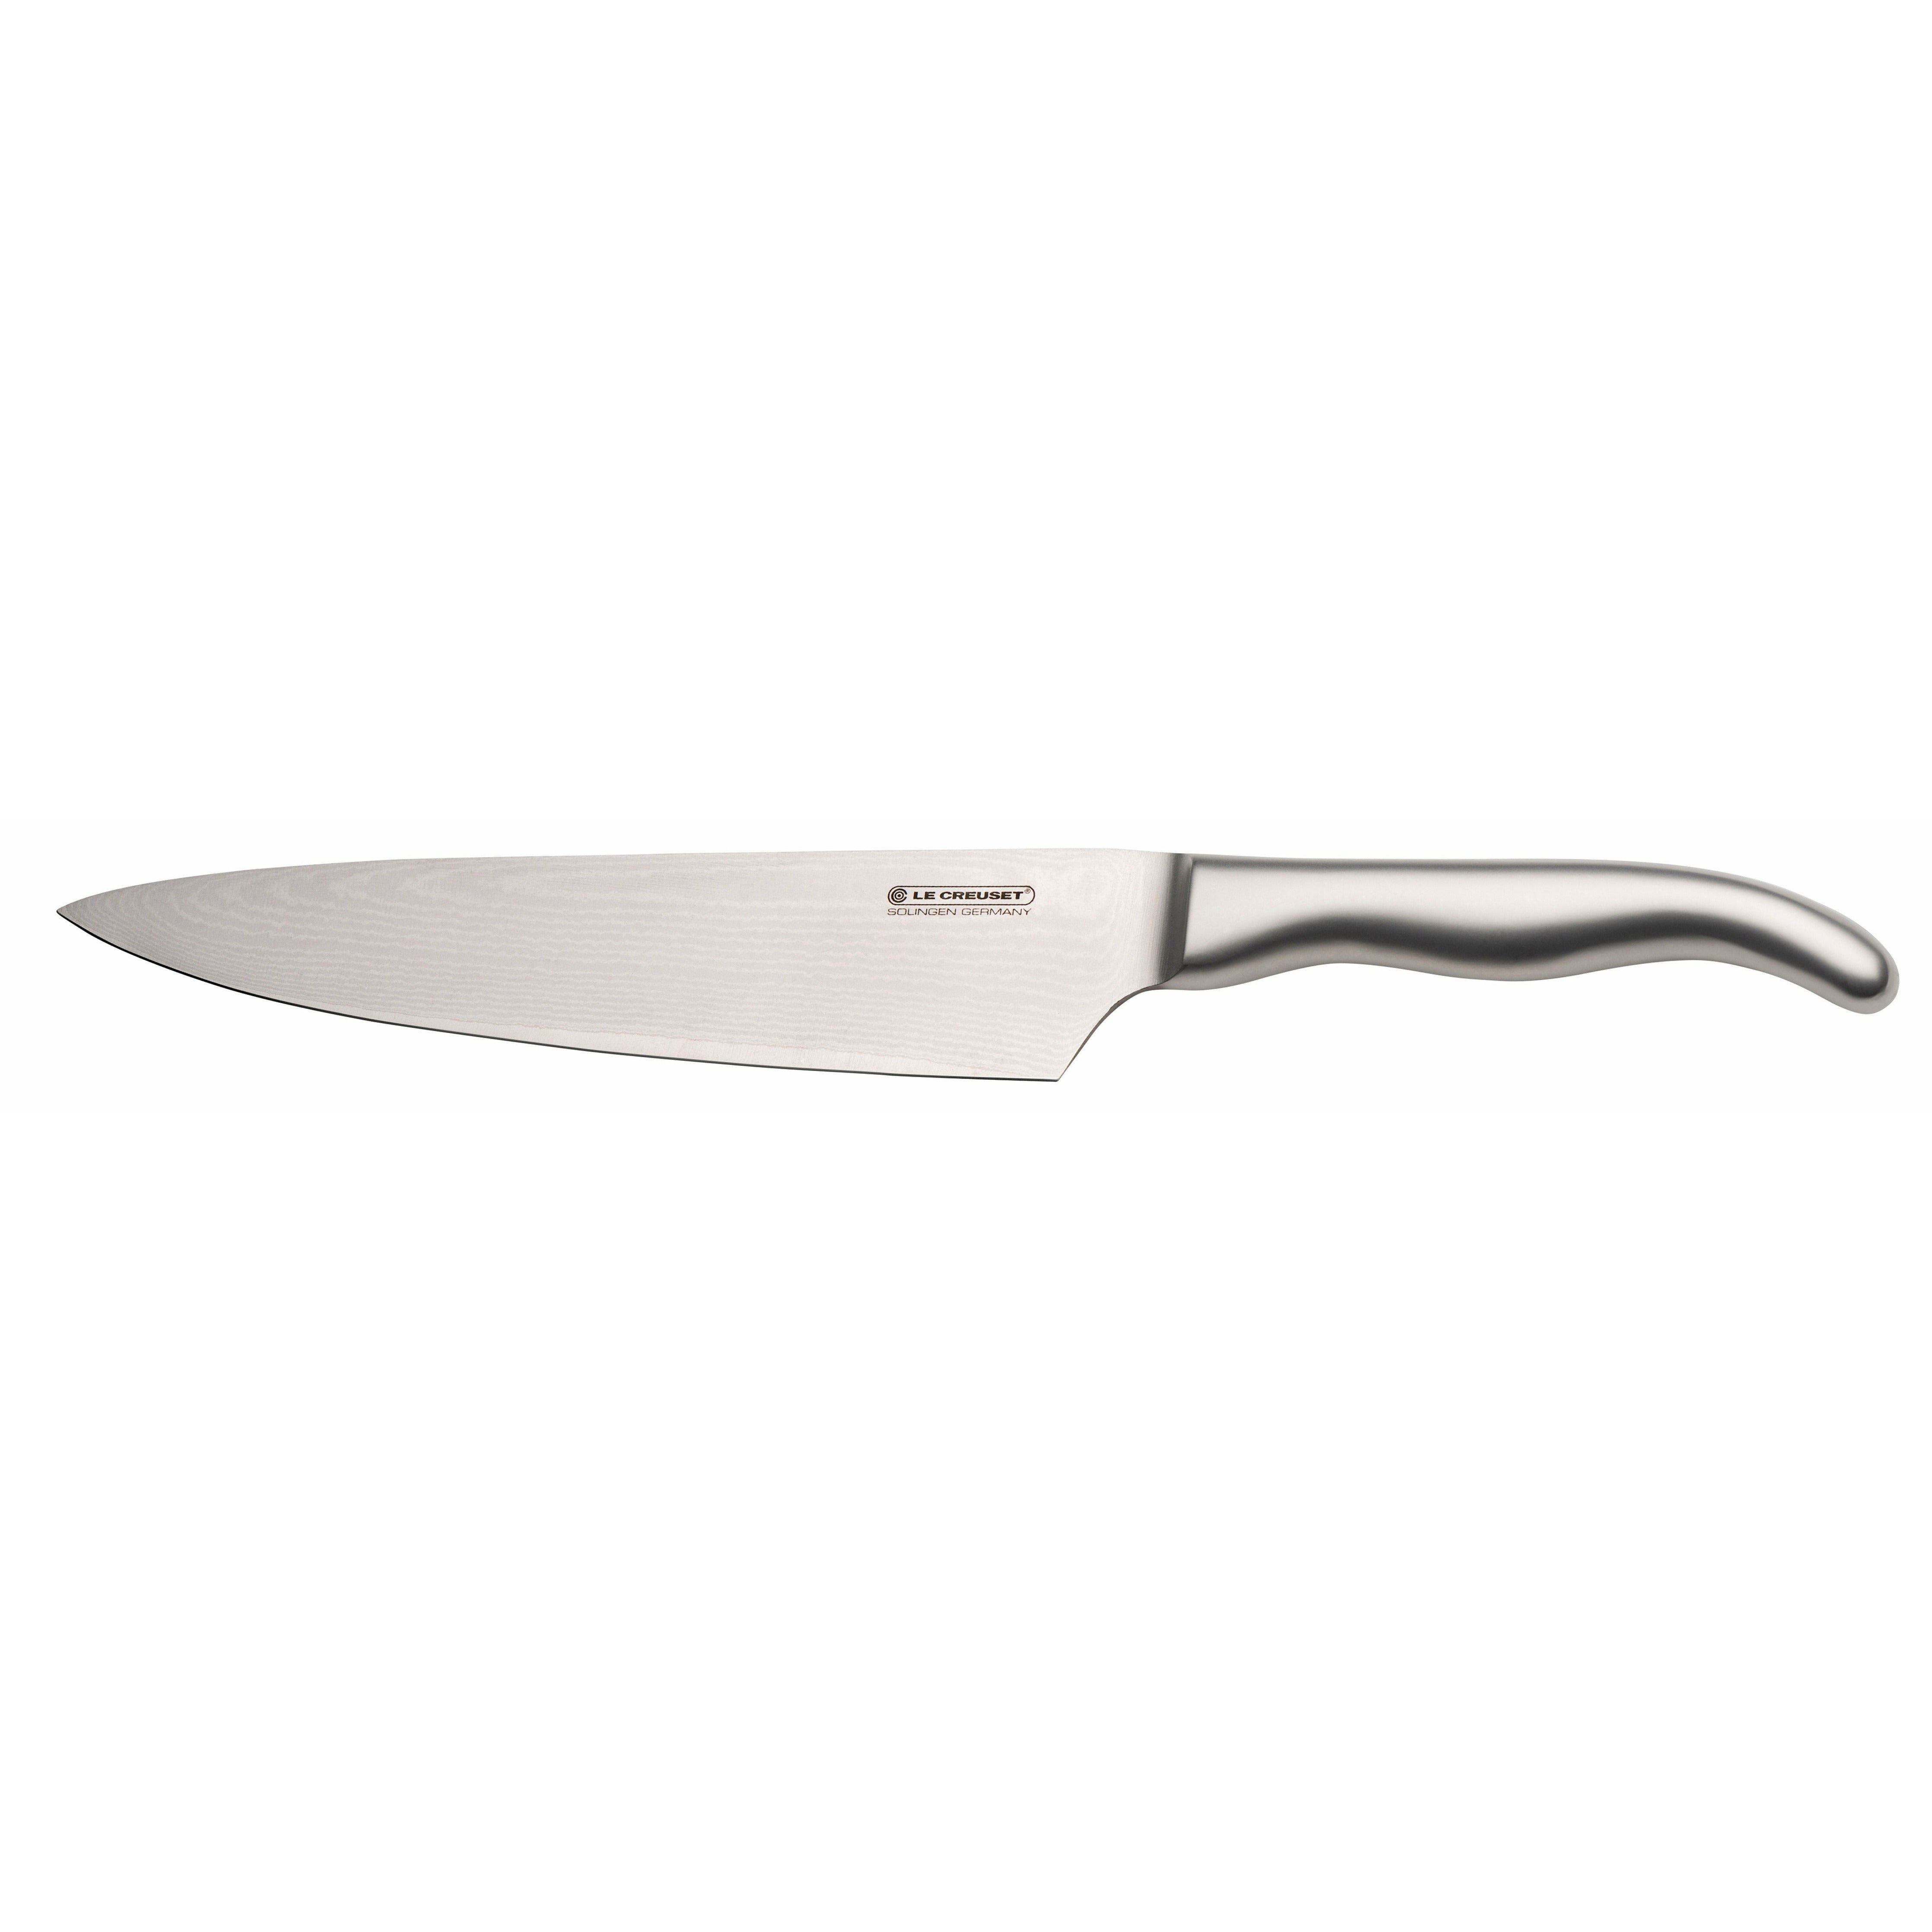 Manija de acero inoxidable con cuchillo de chef de Le Creuset, 20 cm